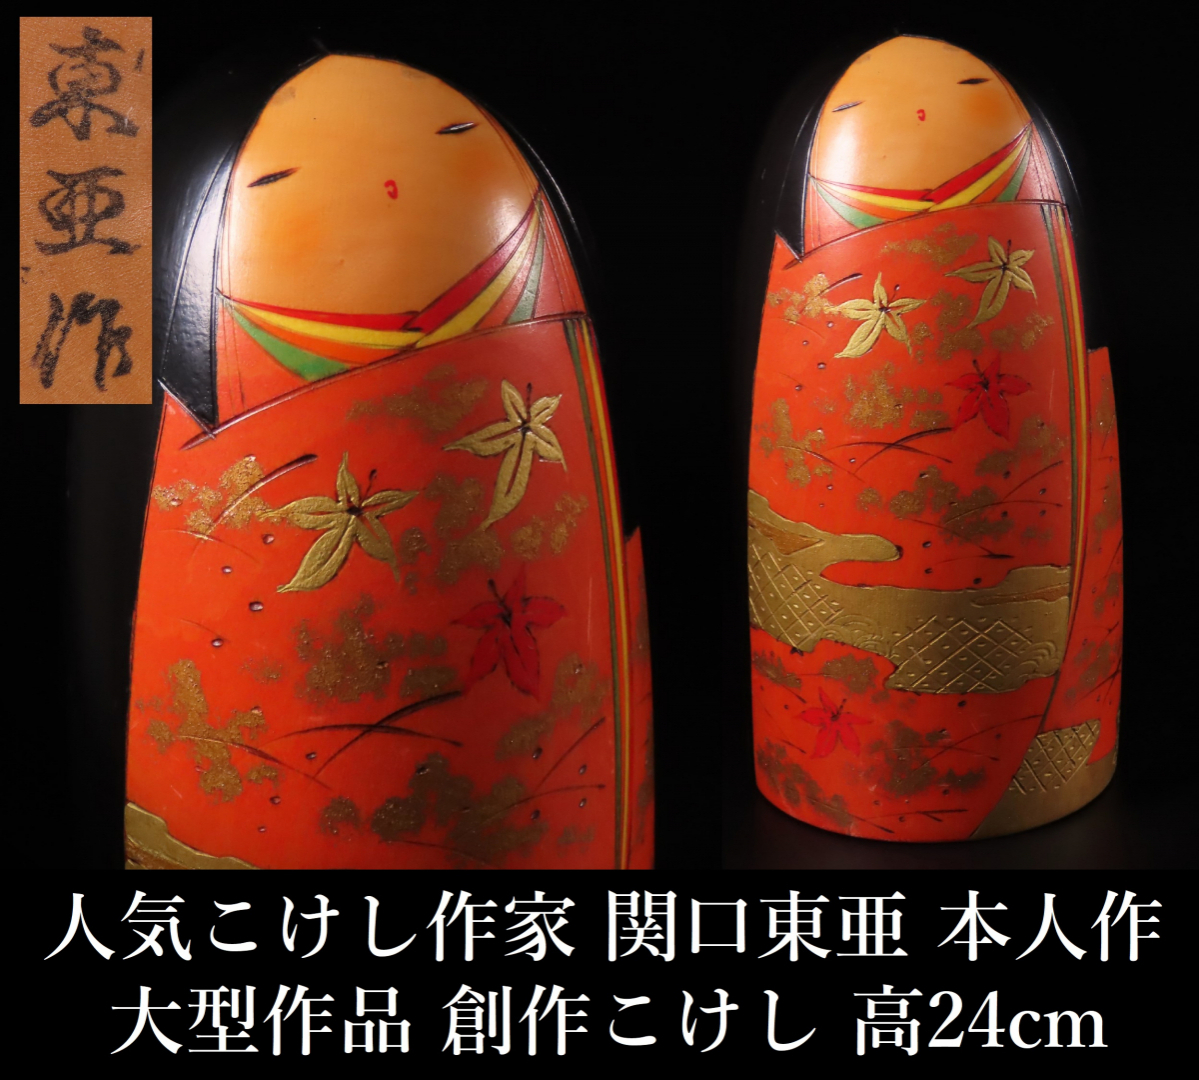 [ONE\'S] популярный kokeshi автор .. восток . сам произведение большой произведение произведение kokeshi высота 24cm масса 1.2kg маленький ..kokesi традиция kokeshi японская кукла . земля игрушка традиция прикладное искусство 